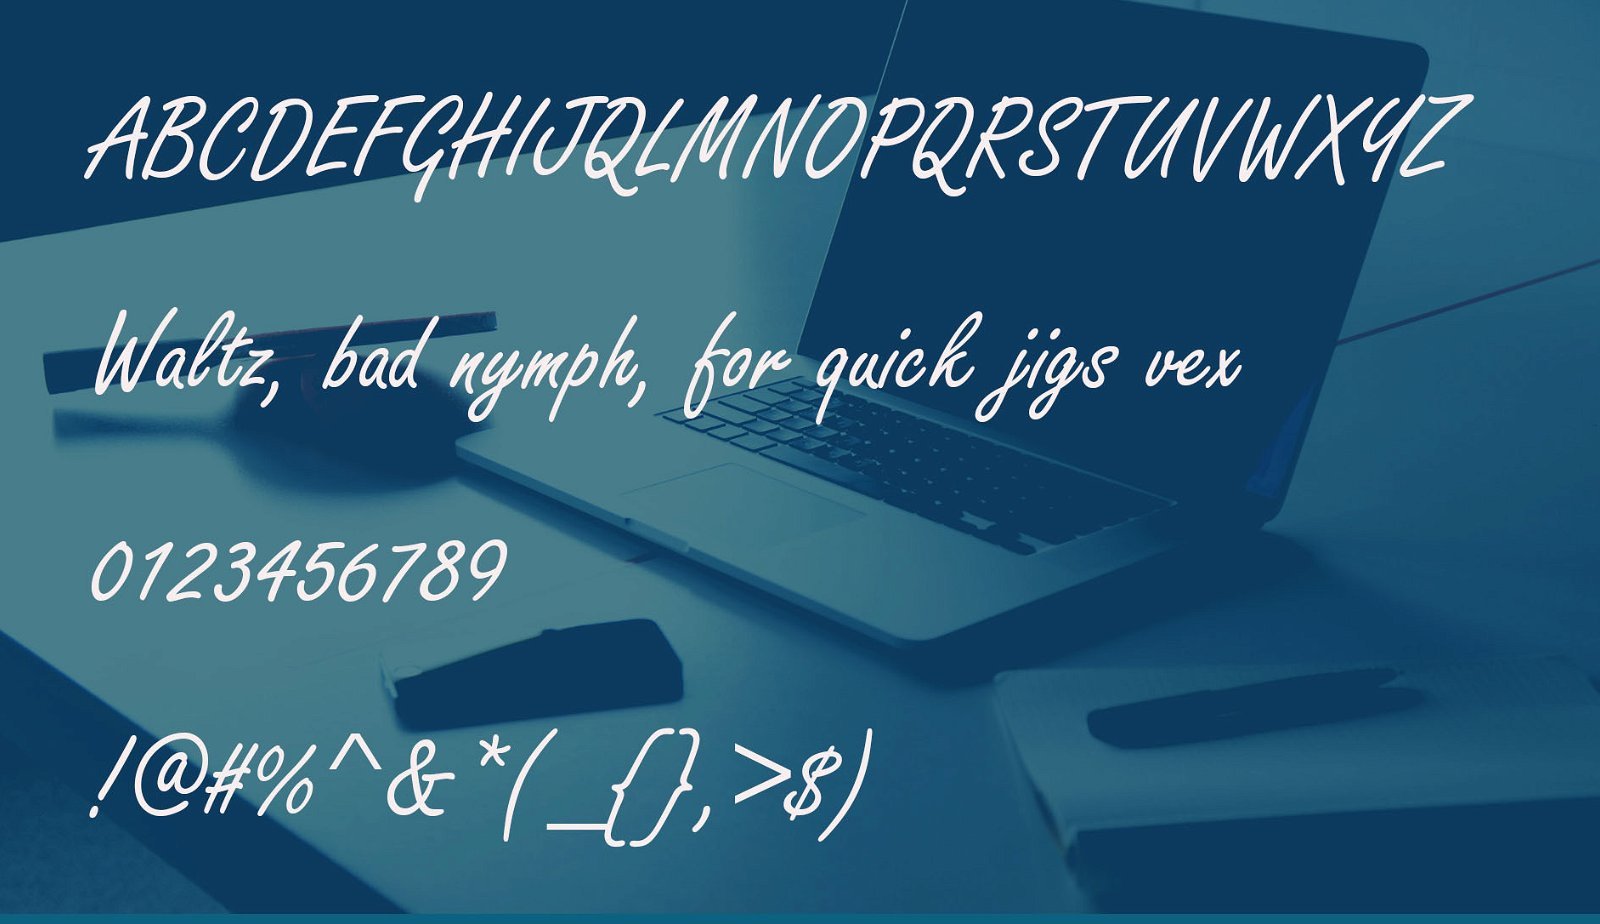 Style Script Font